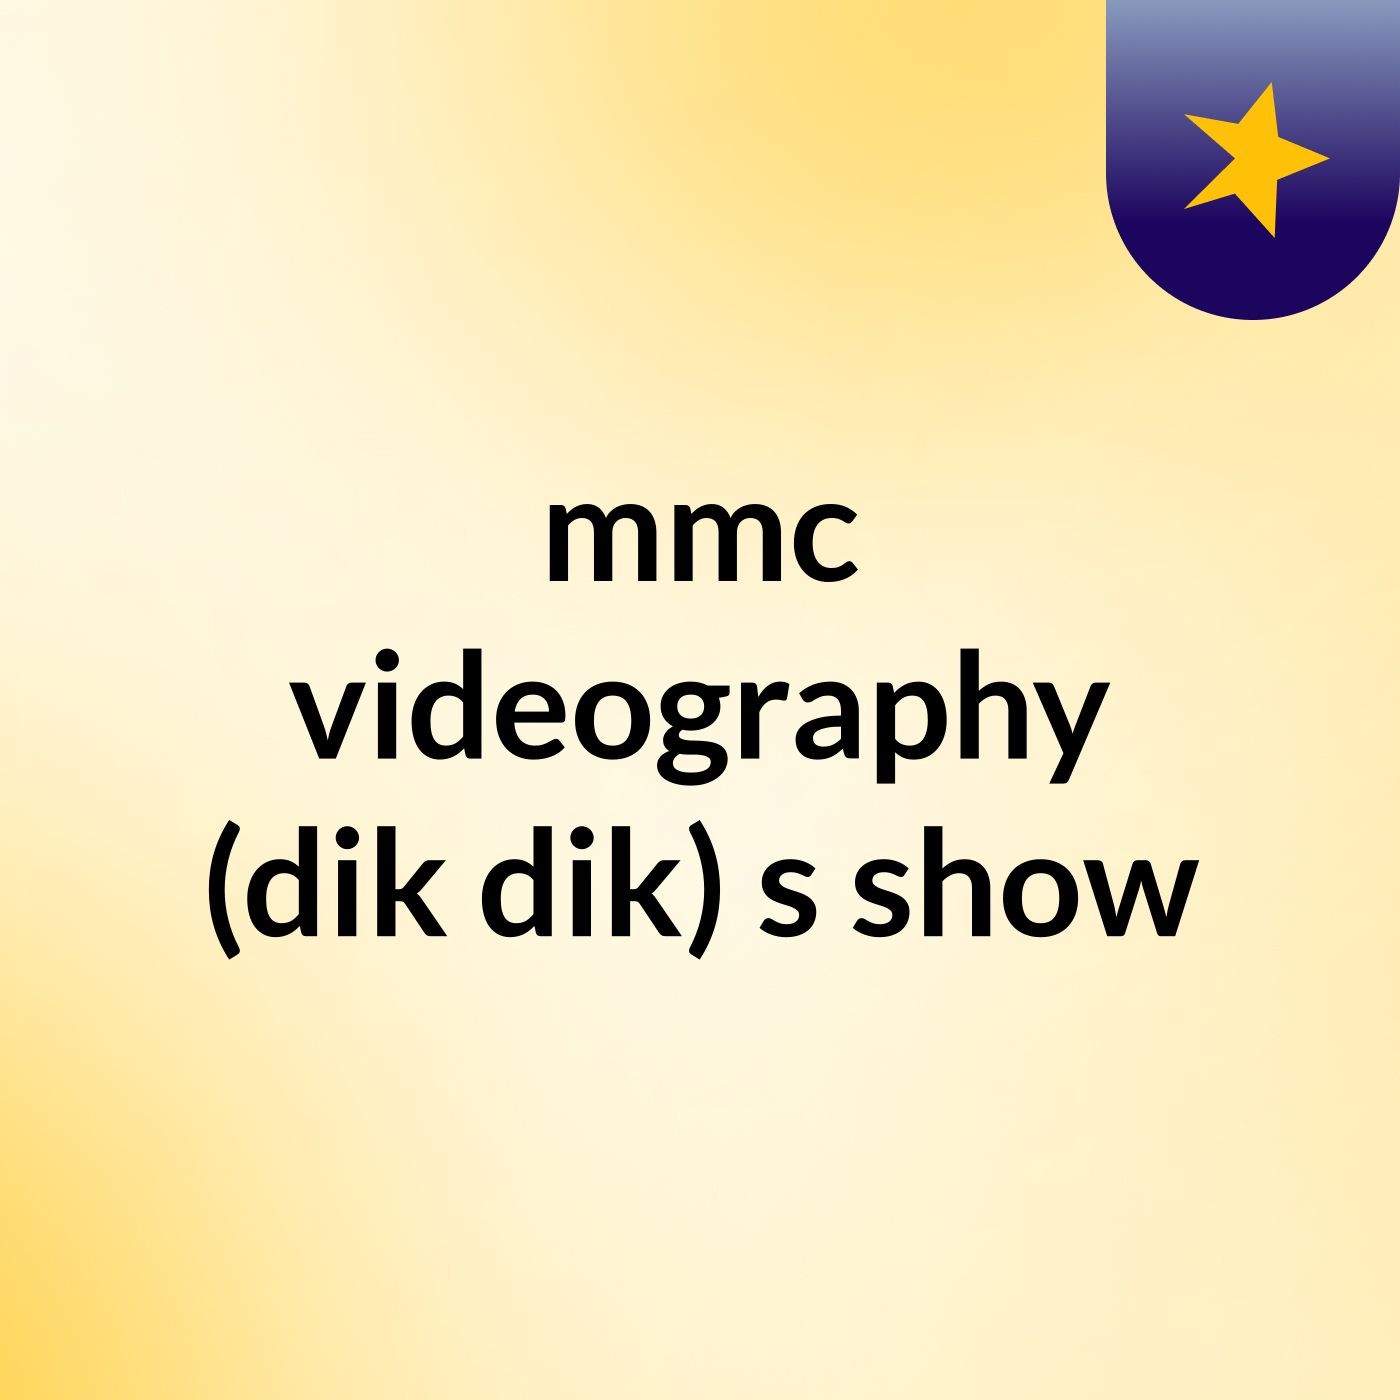 mmc videography (dik dik)'s show